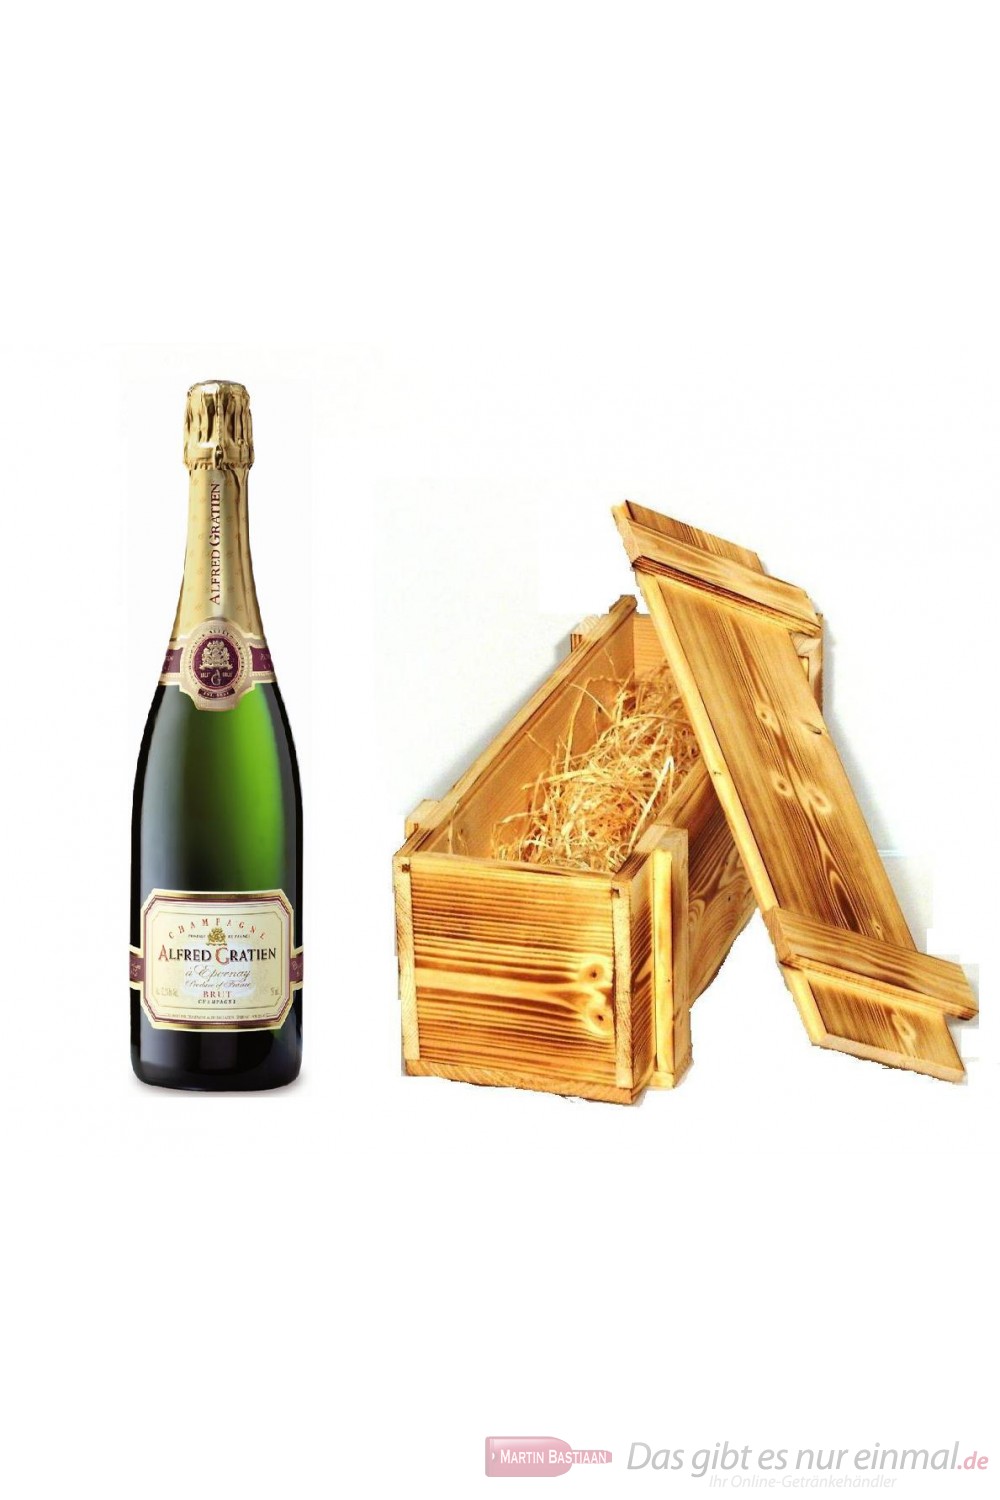 Alfred Gratien Champagner Brut Classique in Holzkiste geflammt 12% 0,75l Flasche